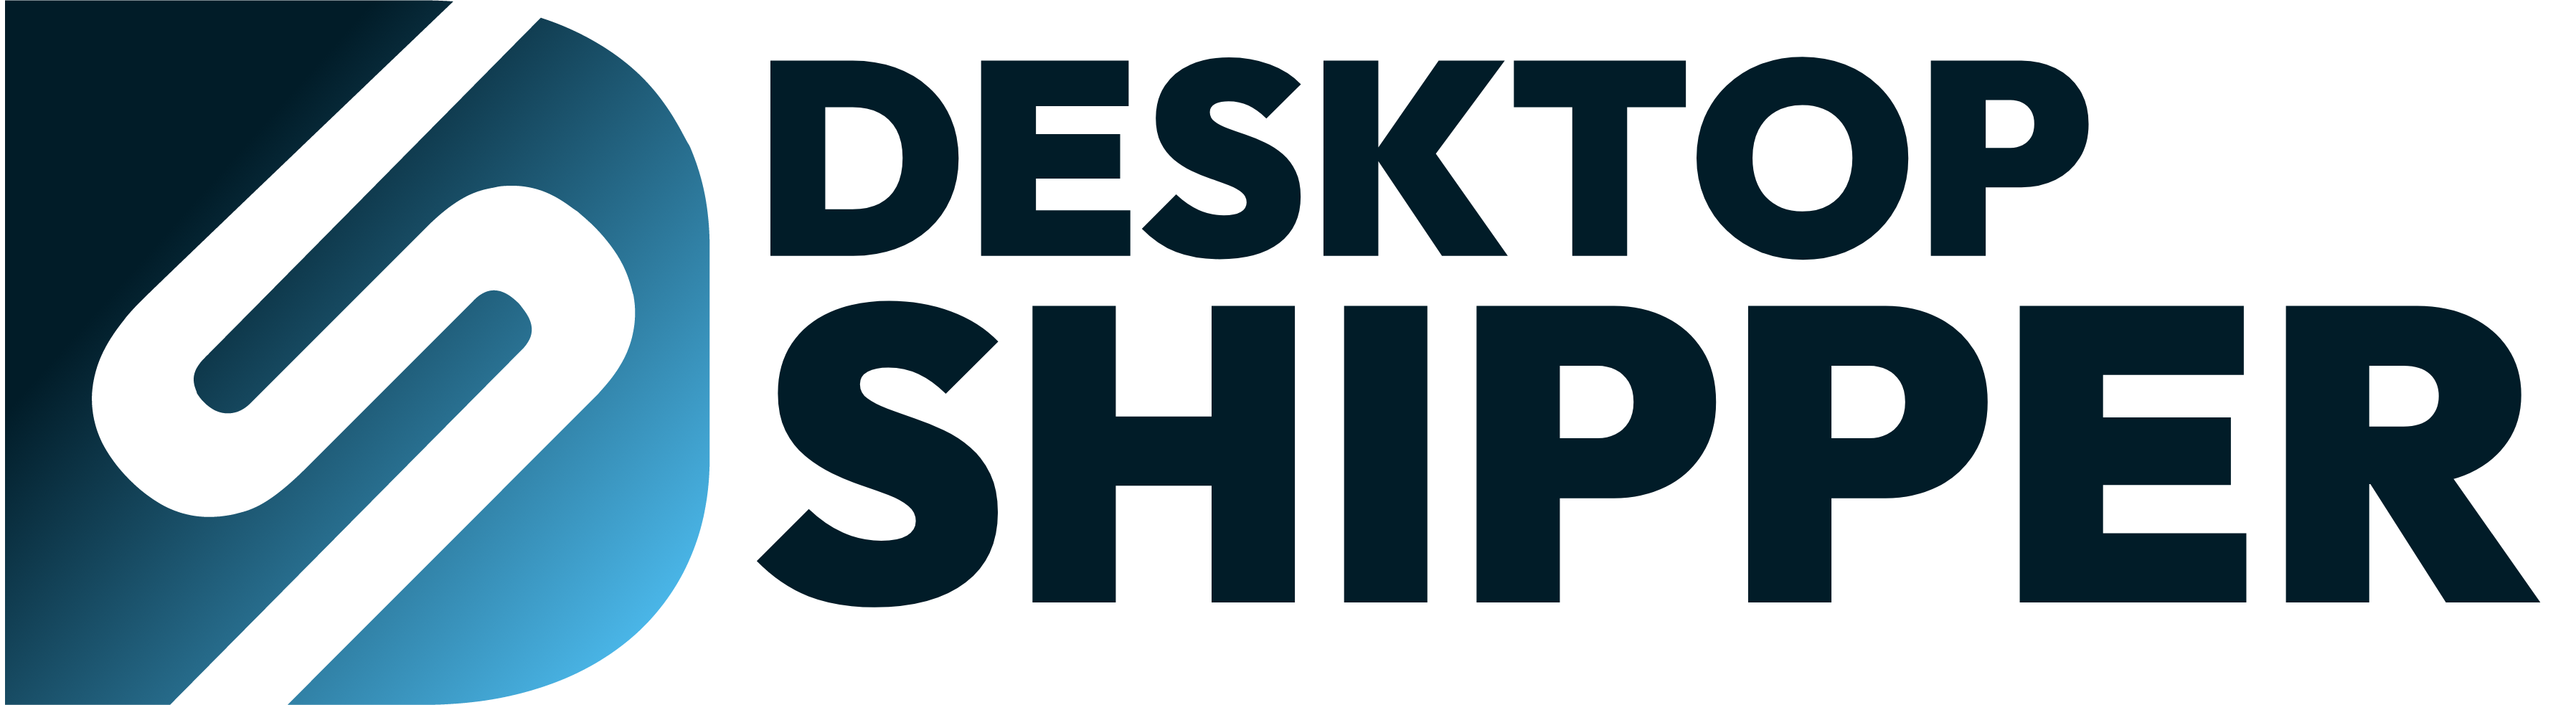 DesktopShipper Transparent Background Logo 2-1